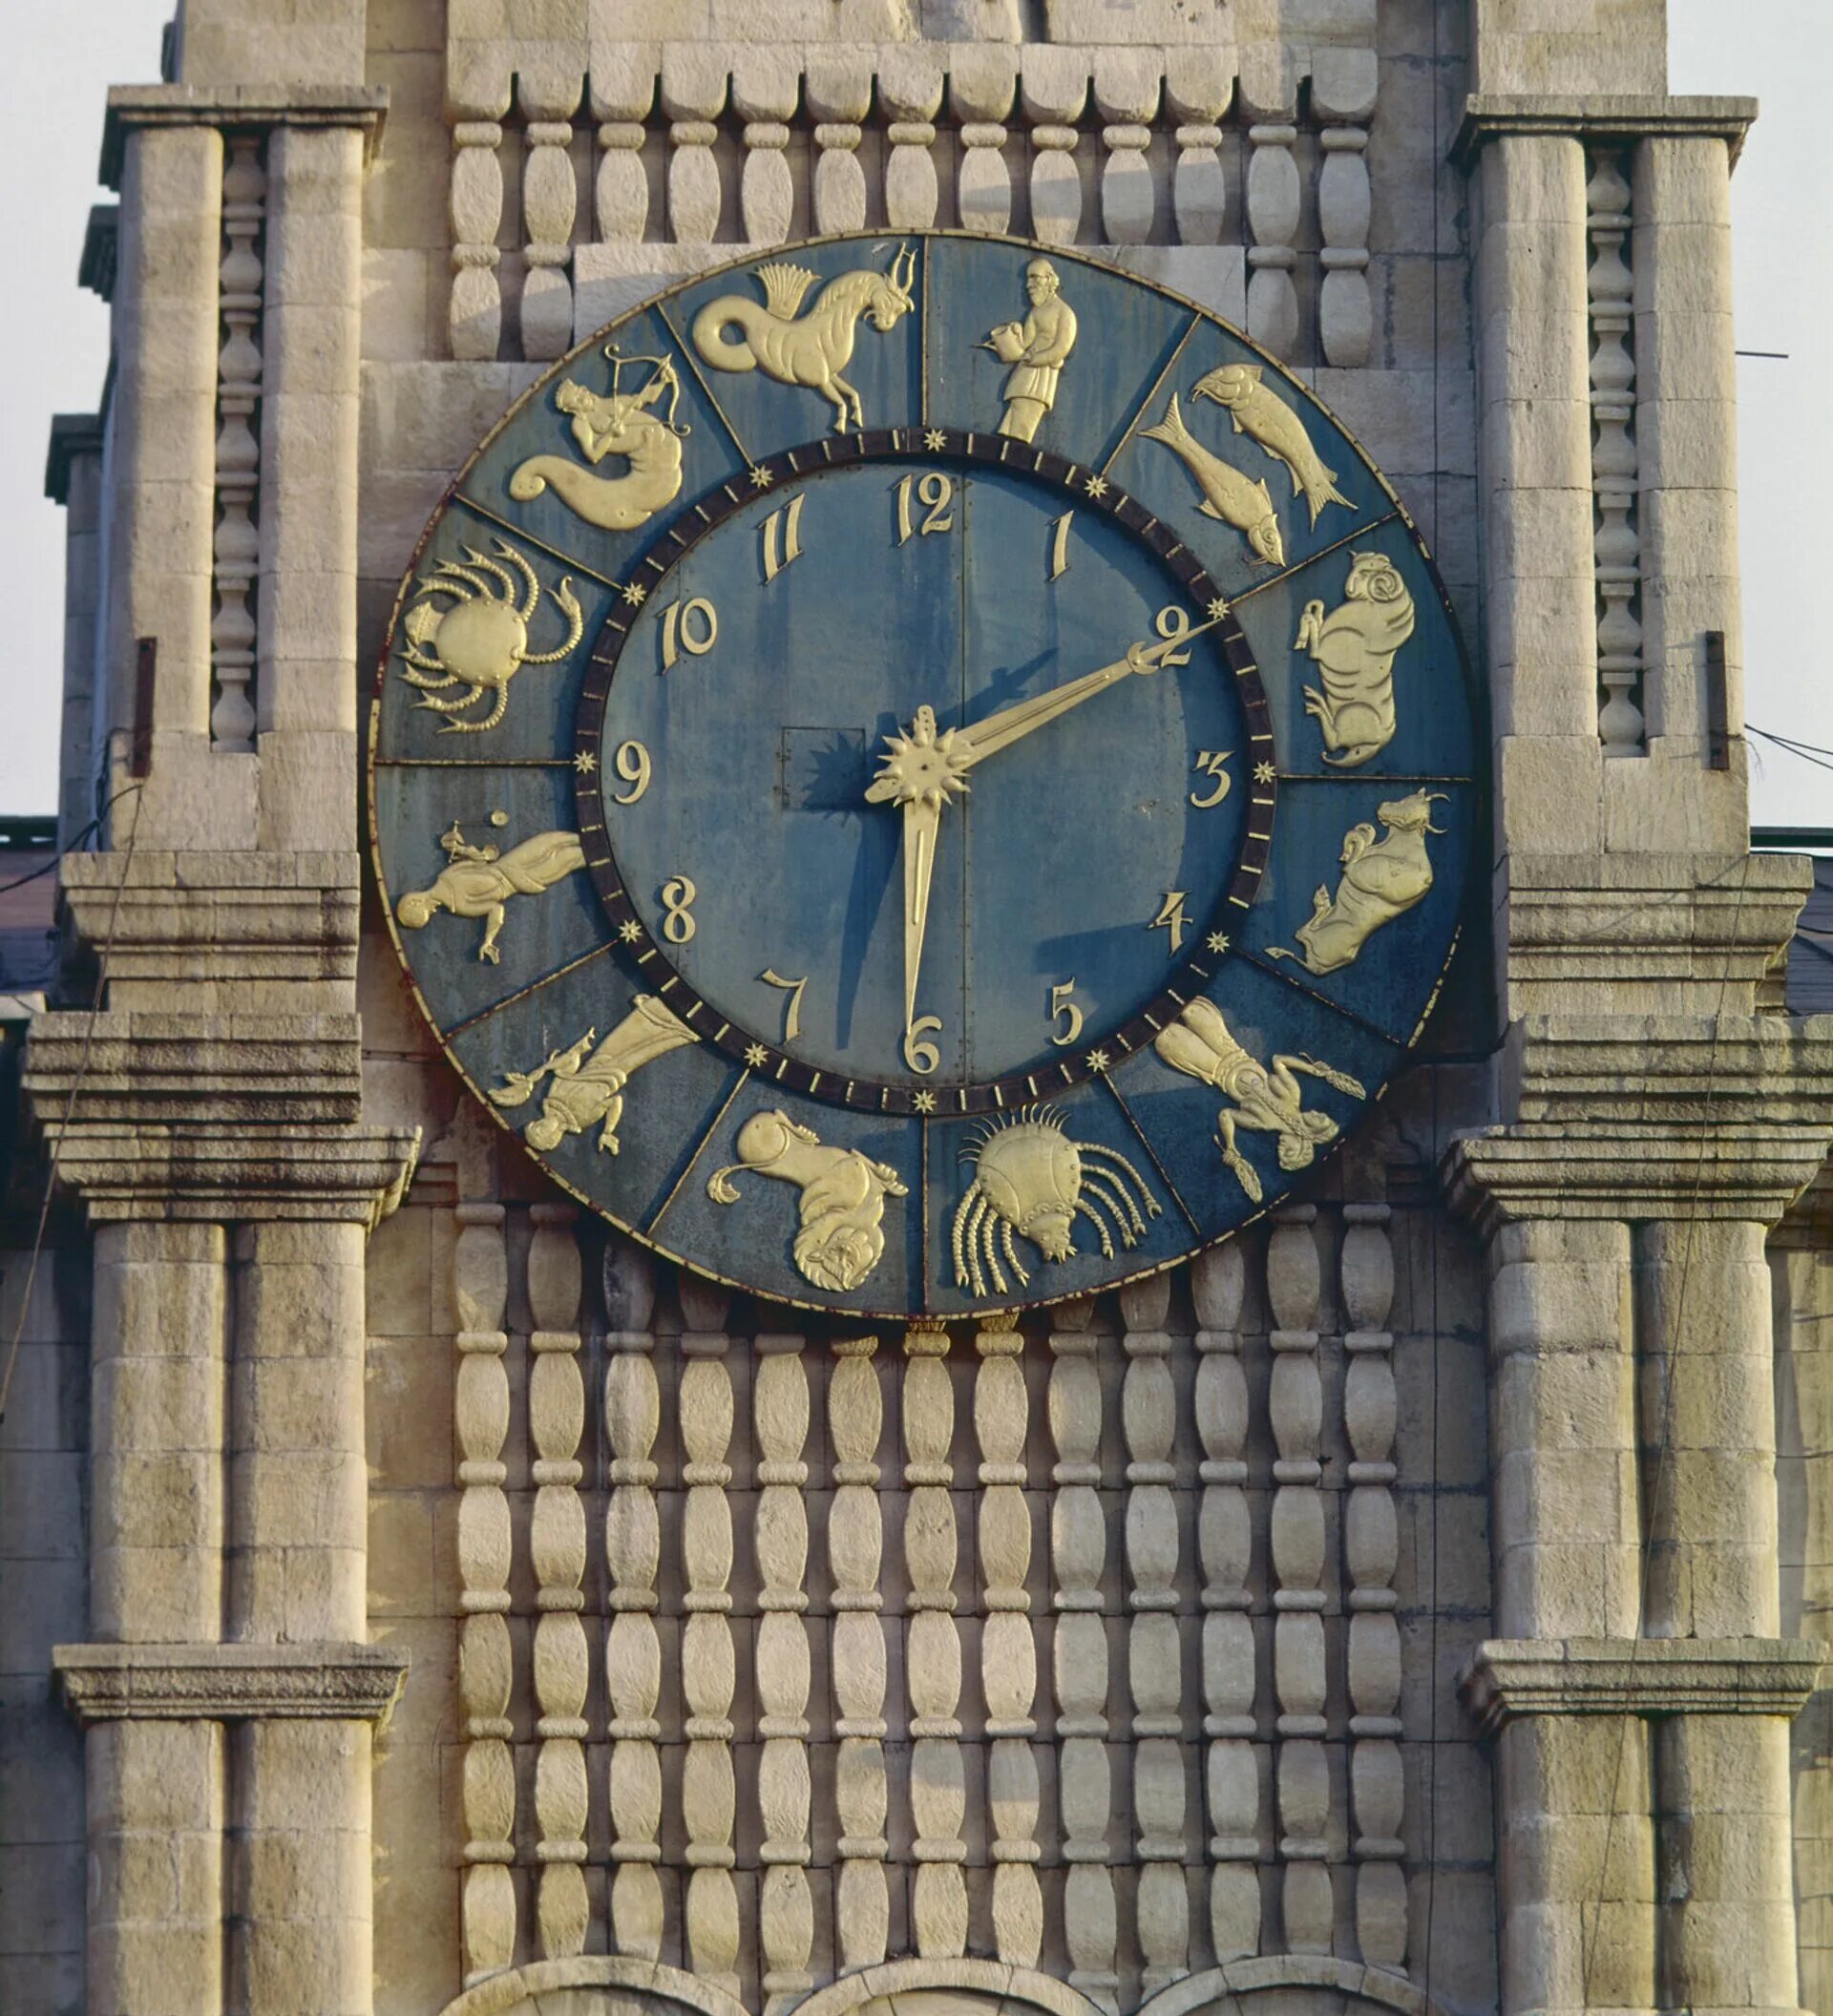 Башенные часы Казанского вокзала. Часовая башня Казанского вокзала. Часы на здании Казанского вокзала. До 3 часов была в городе